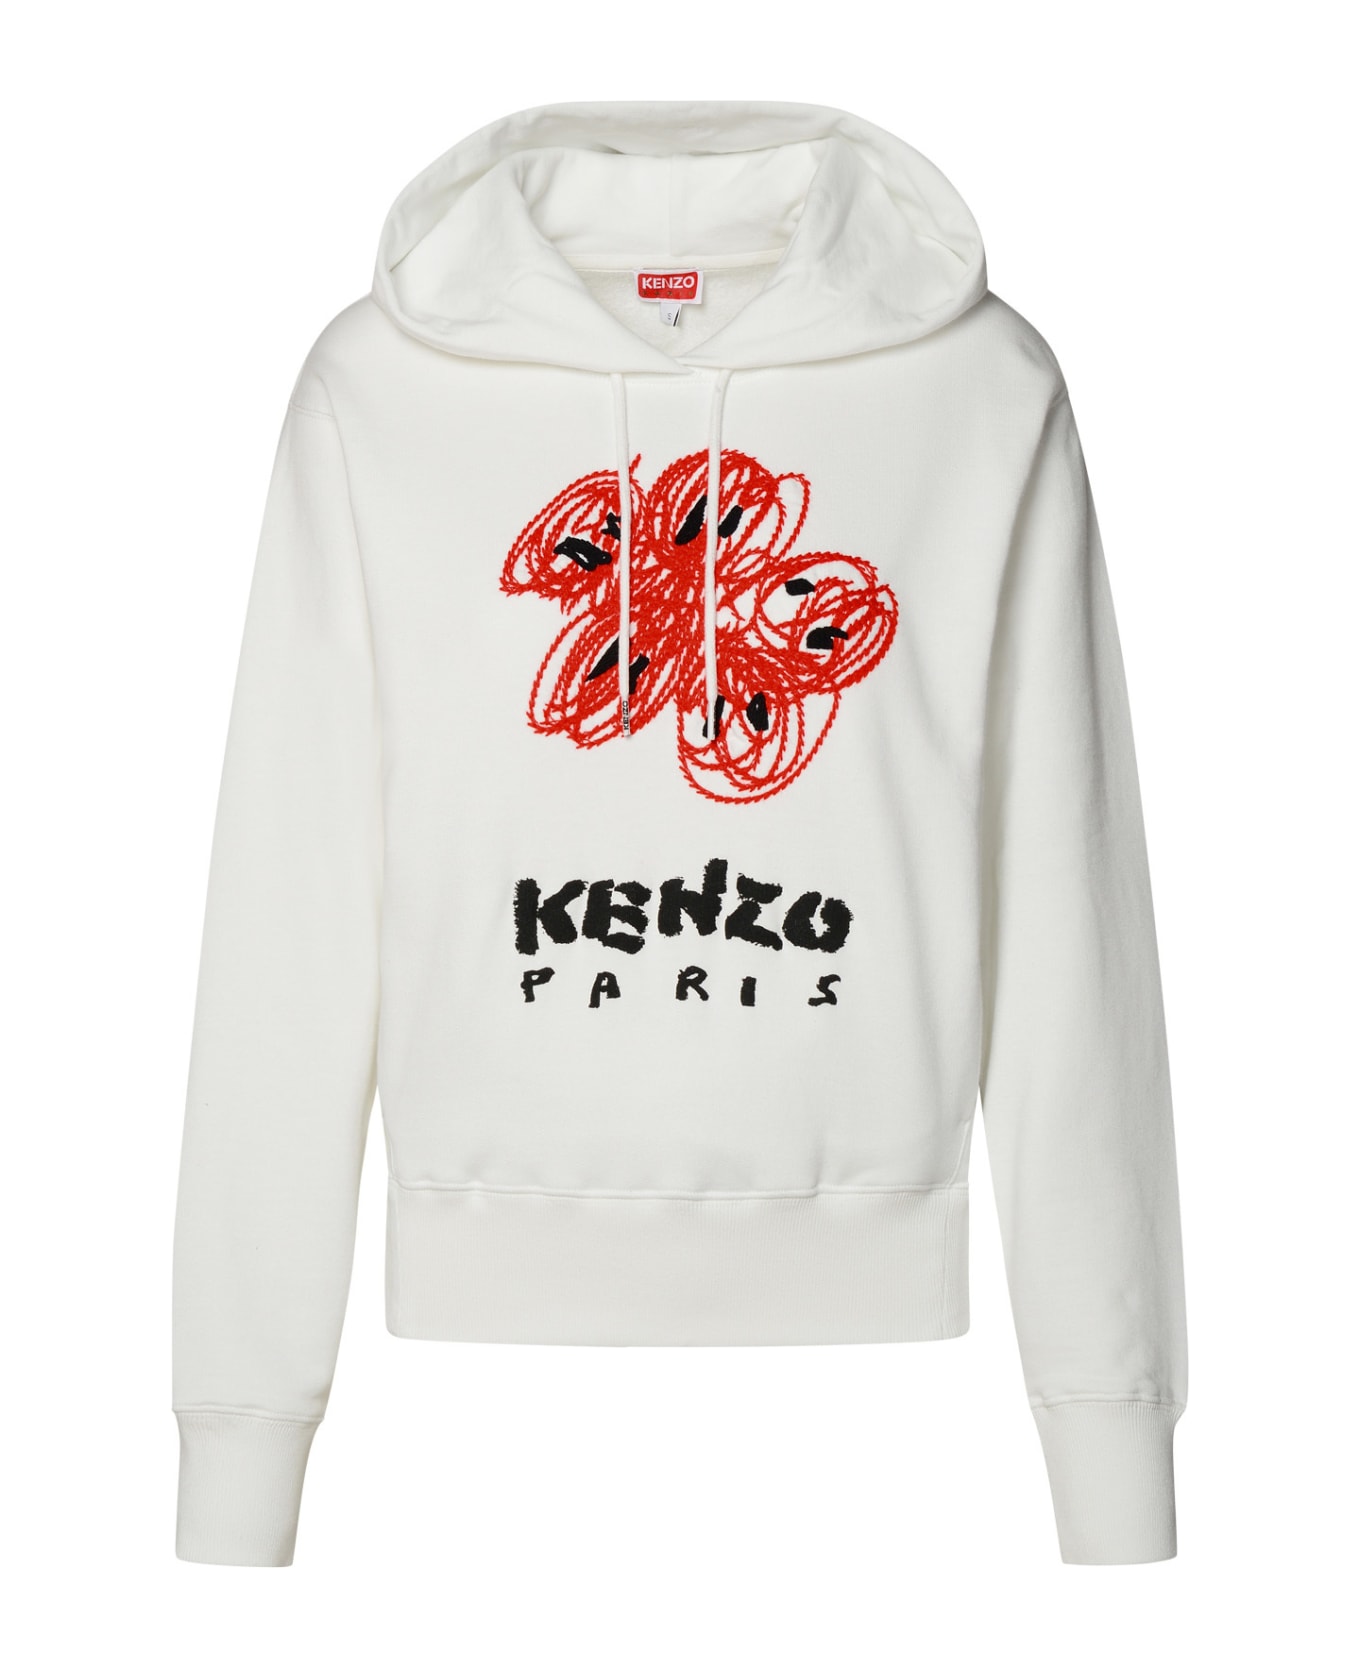 Kenzo Cotton Sweatshirt - White